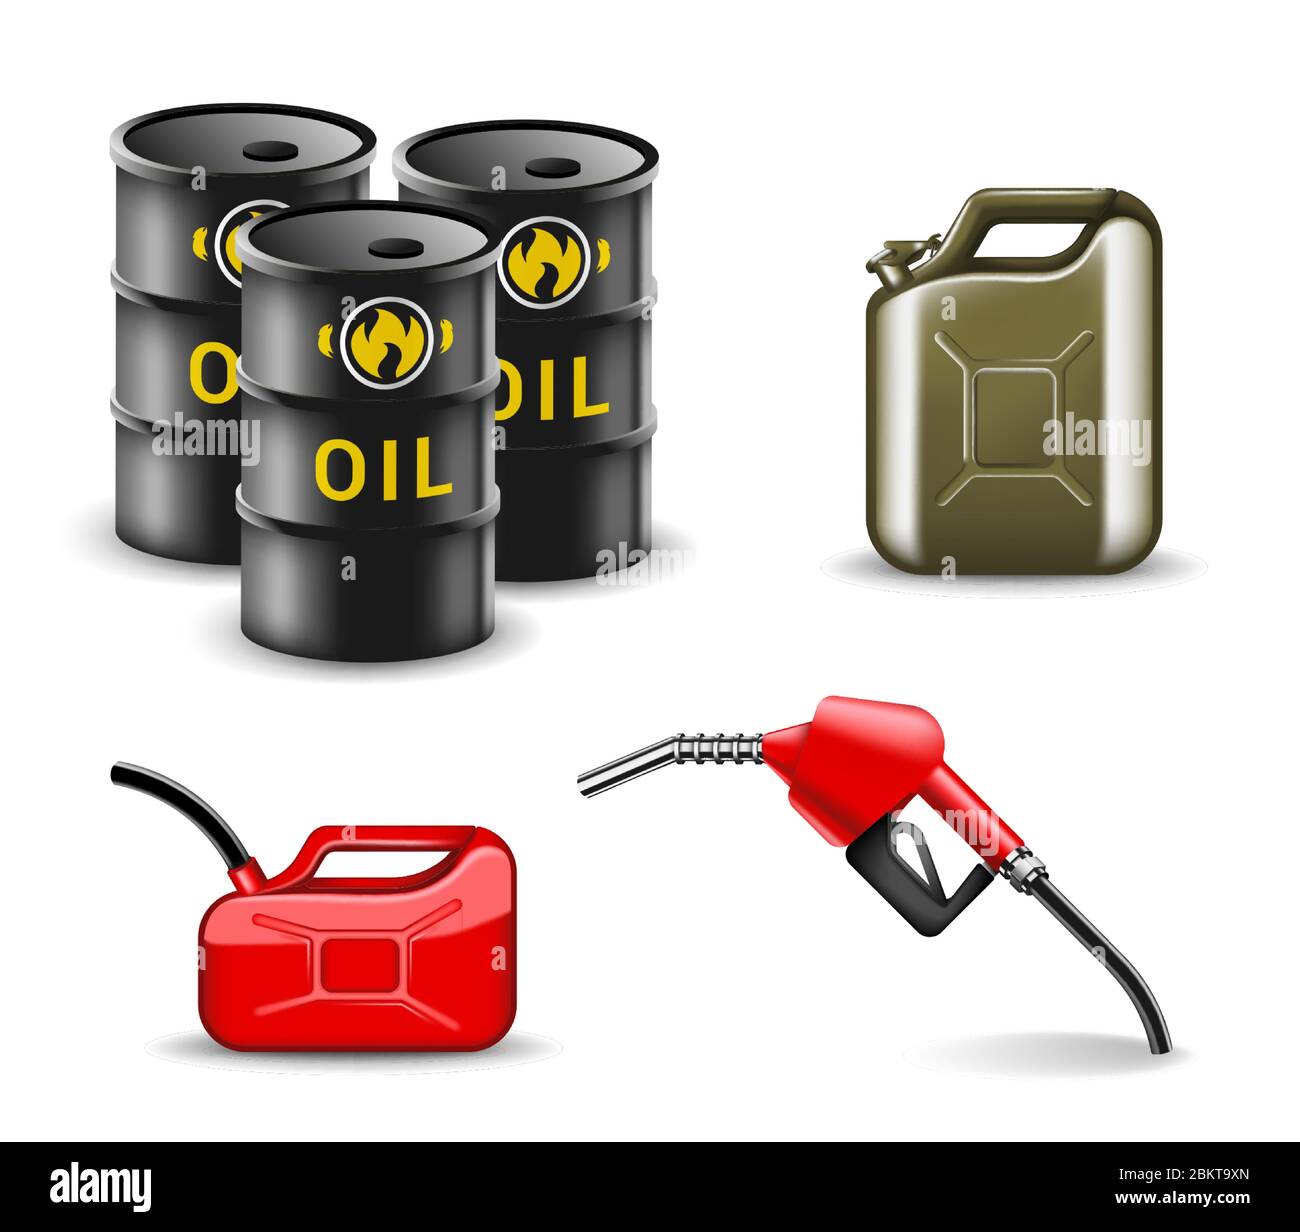 Design-Set für Öl- und gasbezogene Elemente. Vektorgrafik-Sammlung für die Kraftstoffindustrie in realistischem Stil. Leistung und Energie Stock Vektor